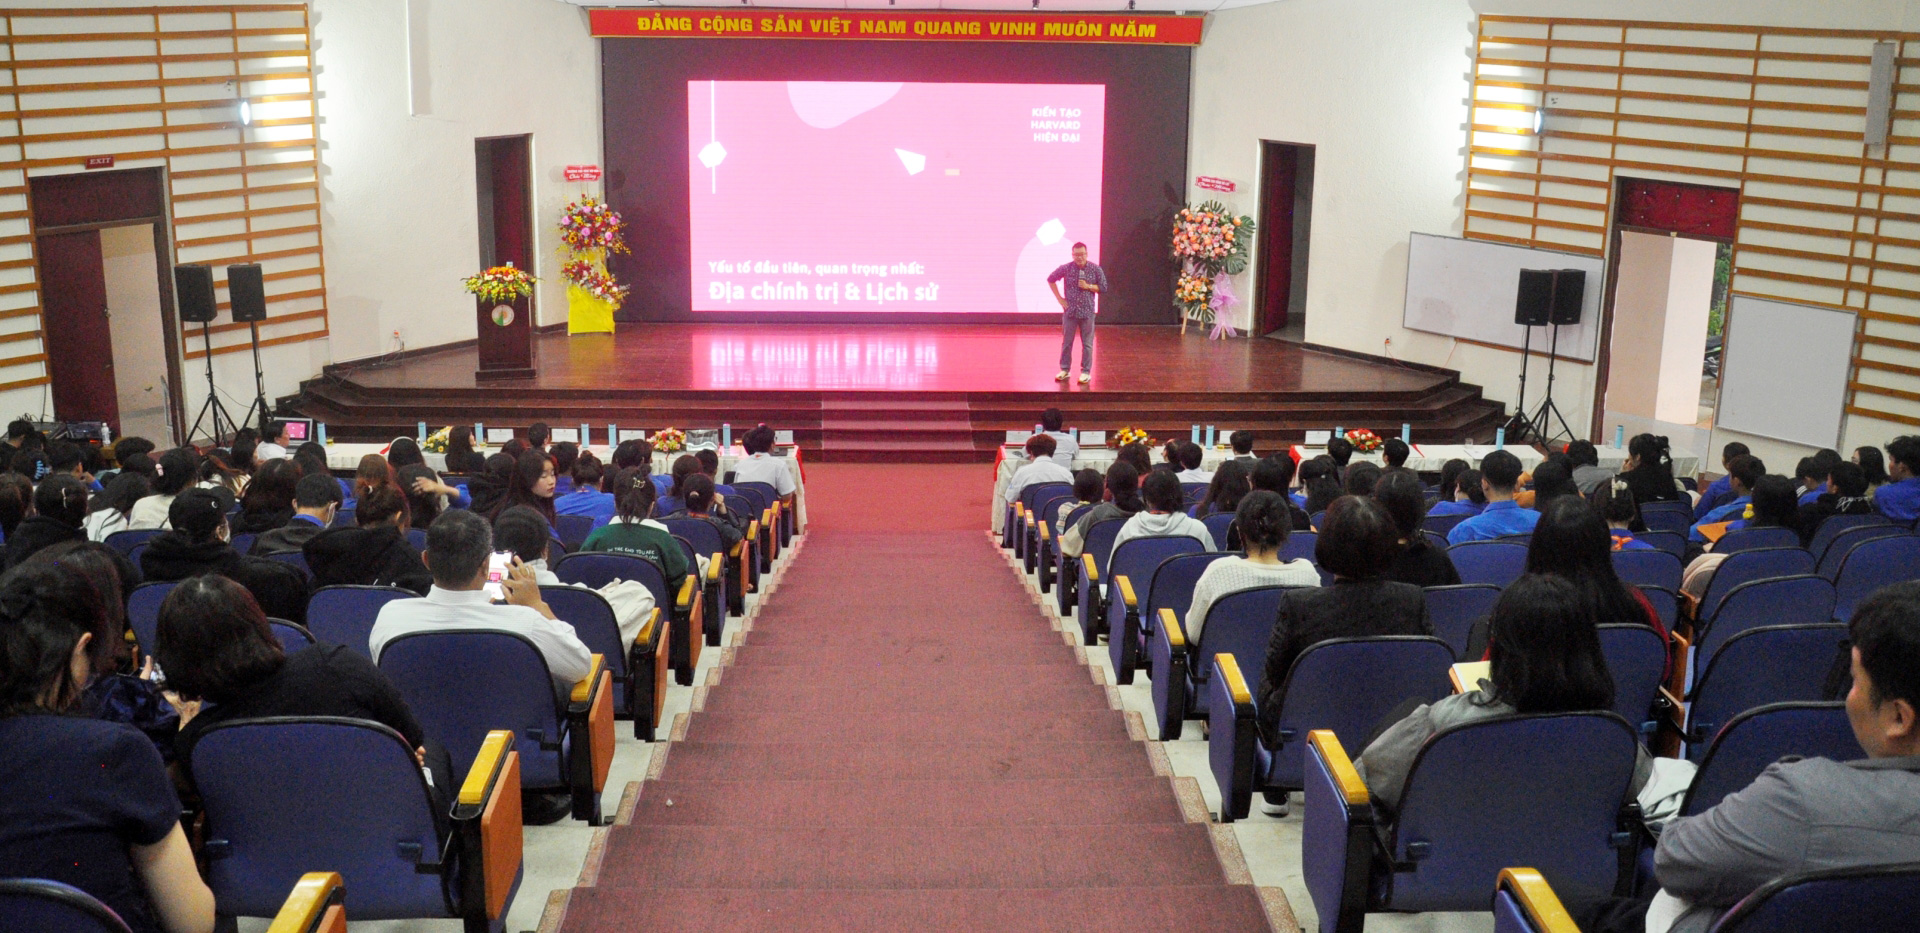 Đông đảo giảng viên, học viên, sinh viên của Trường Đại học Đà Lạt đến tham dự talkshow “Một góc nhìn về Nguyễn Ái Quốc - Hồ Chí Minh”